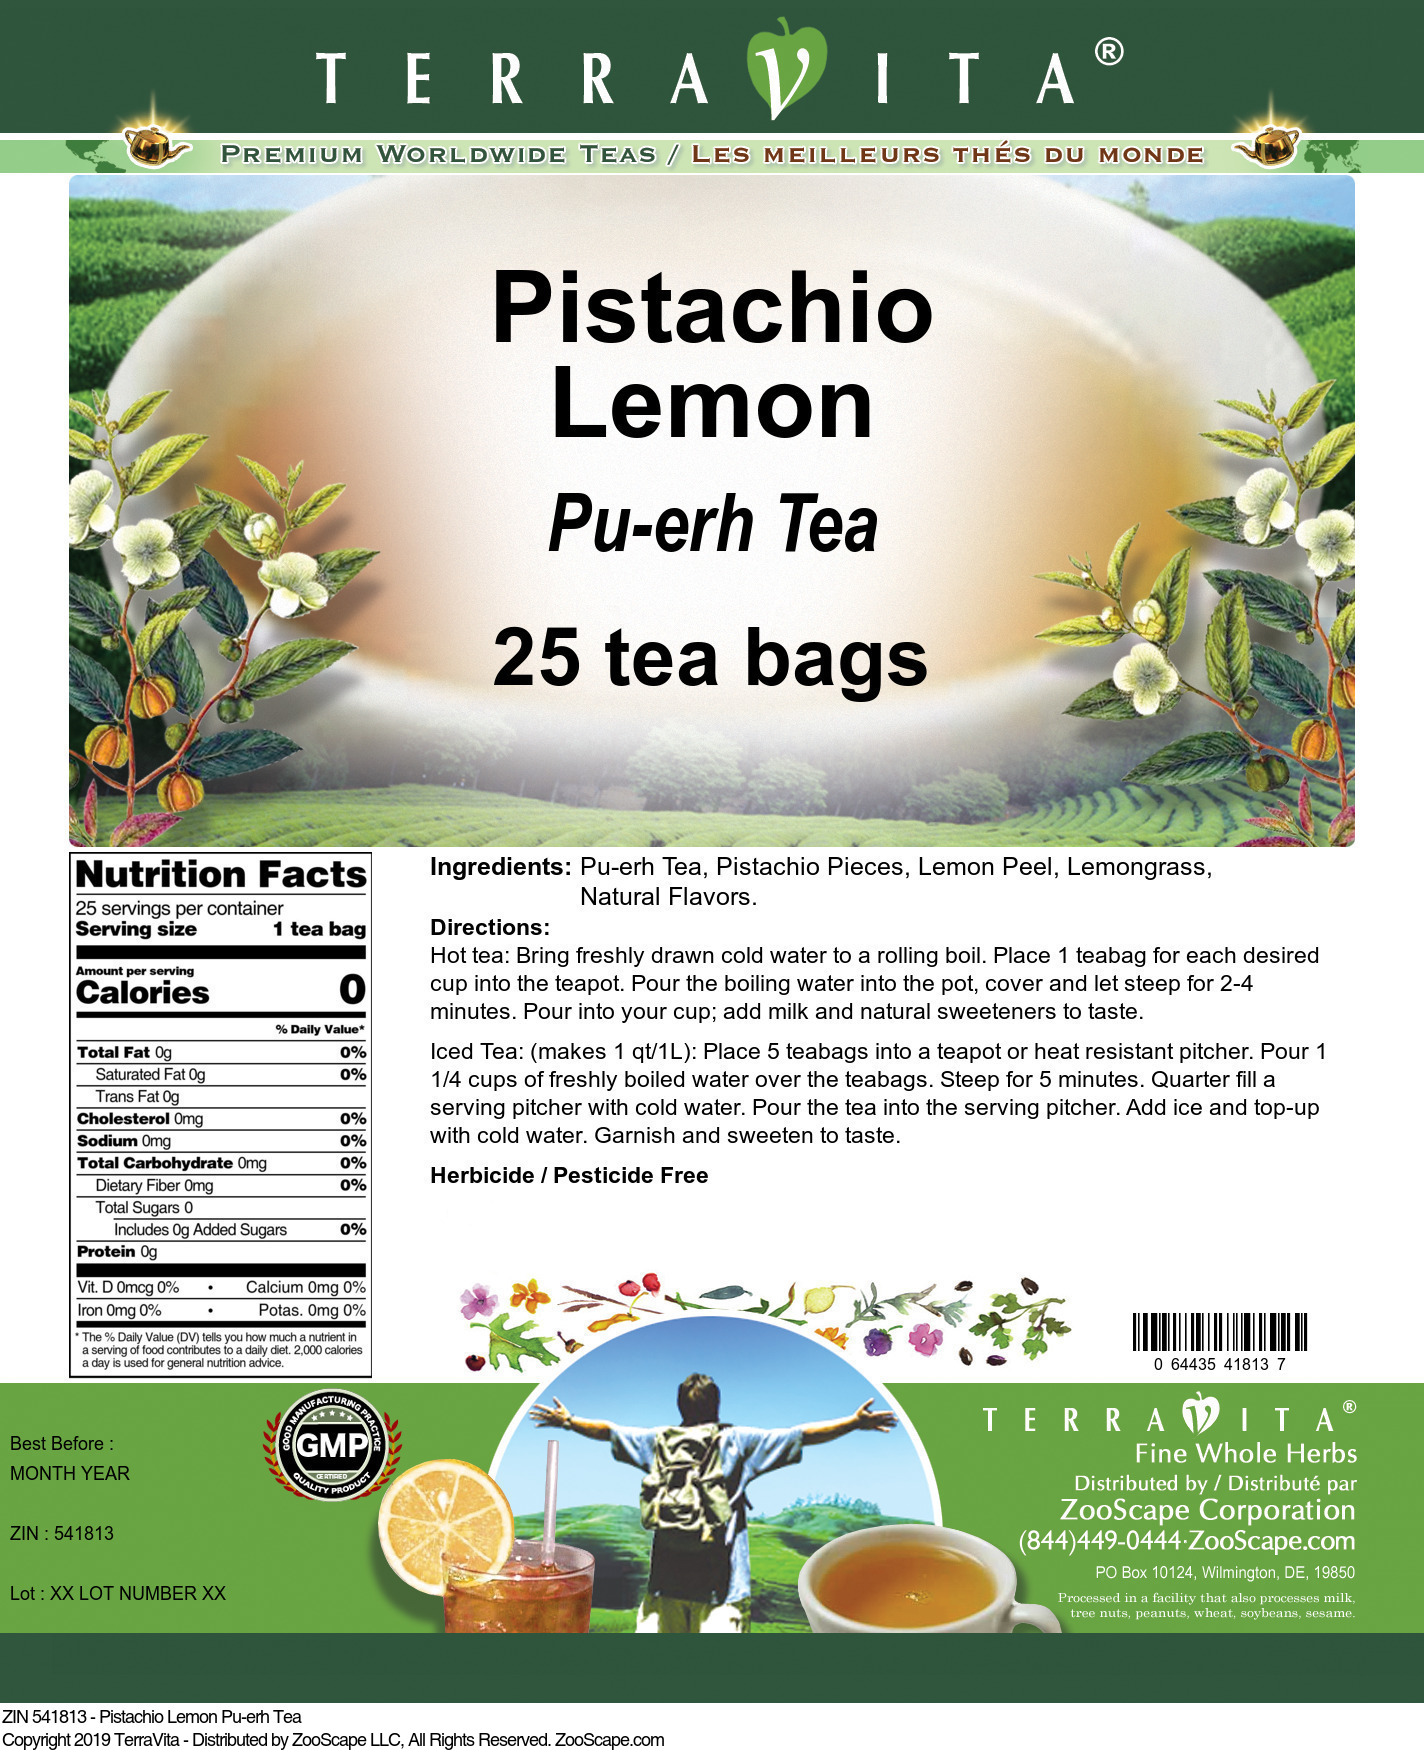 Pistachio Lemon Pu-erh Tea - Label